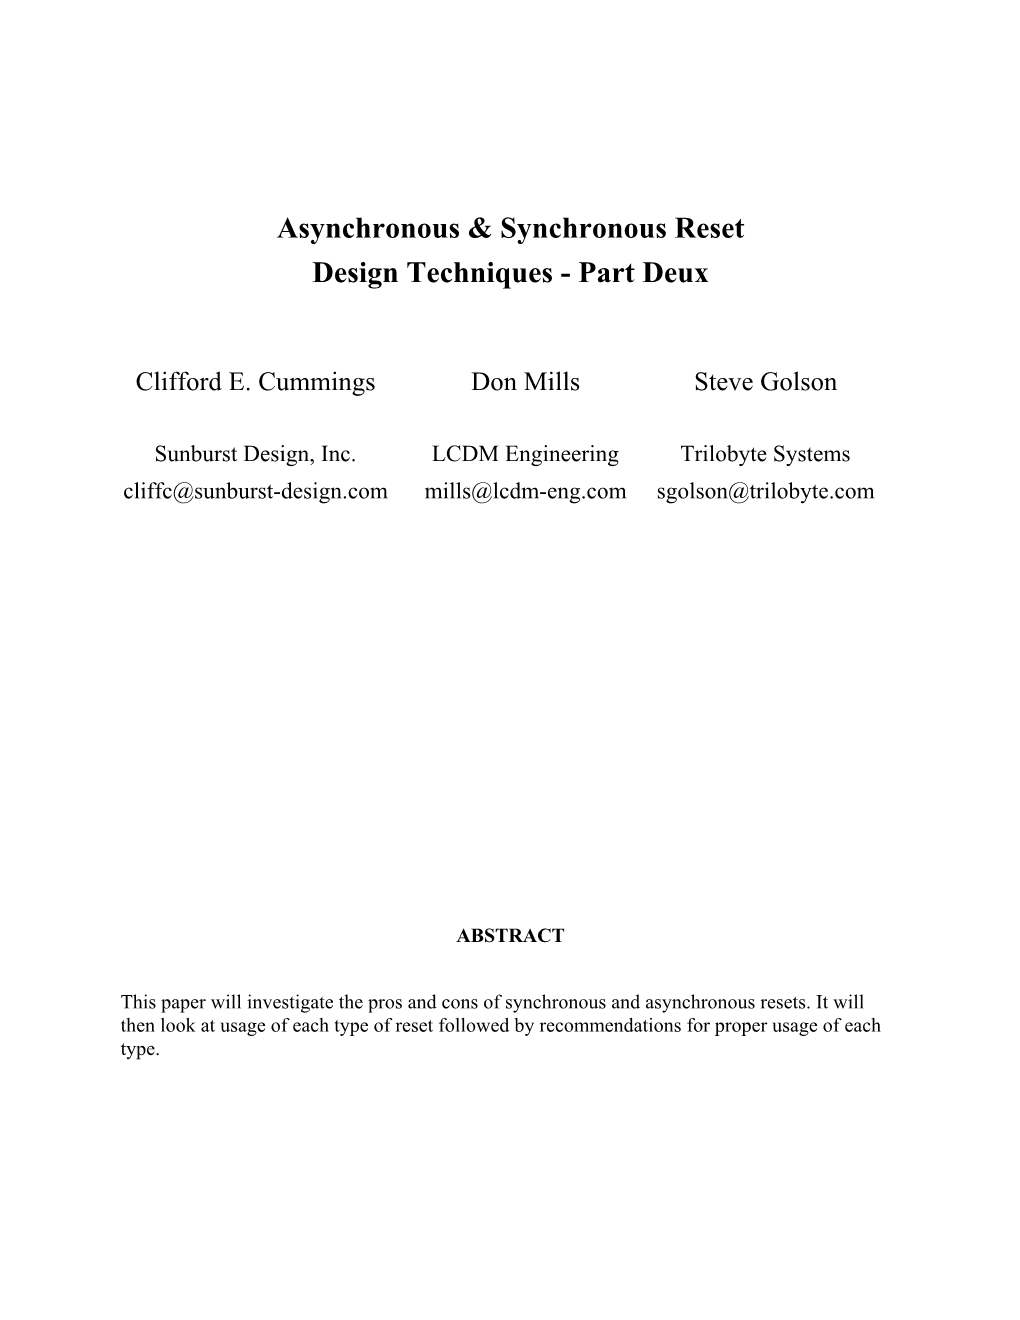 Asynchronous & Synchronous Reset Design Techniques